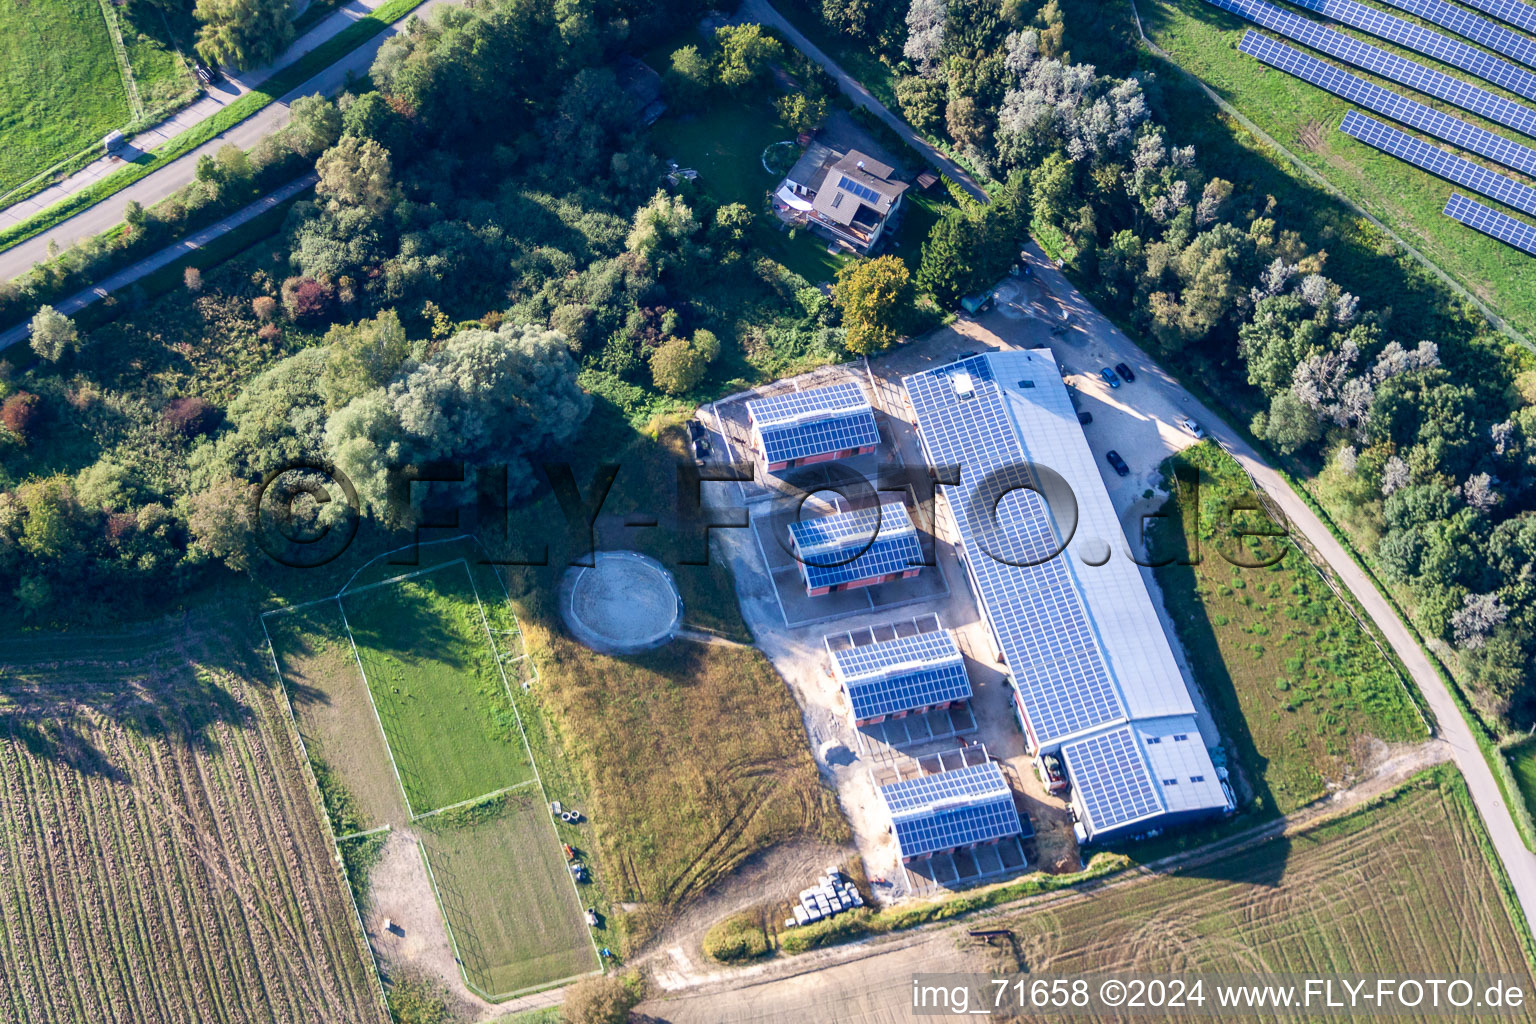 Vue aérienne de Centre équestre - centre équestre - écuries du Tra à le quartier Wollmatingen in Konstanz dans le département Bade-Wurtemberg, Allemagne